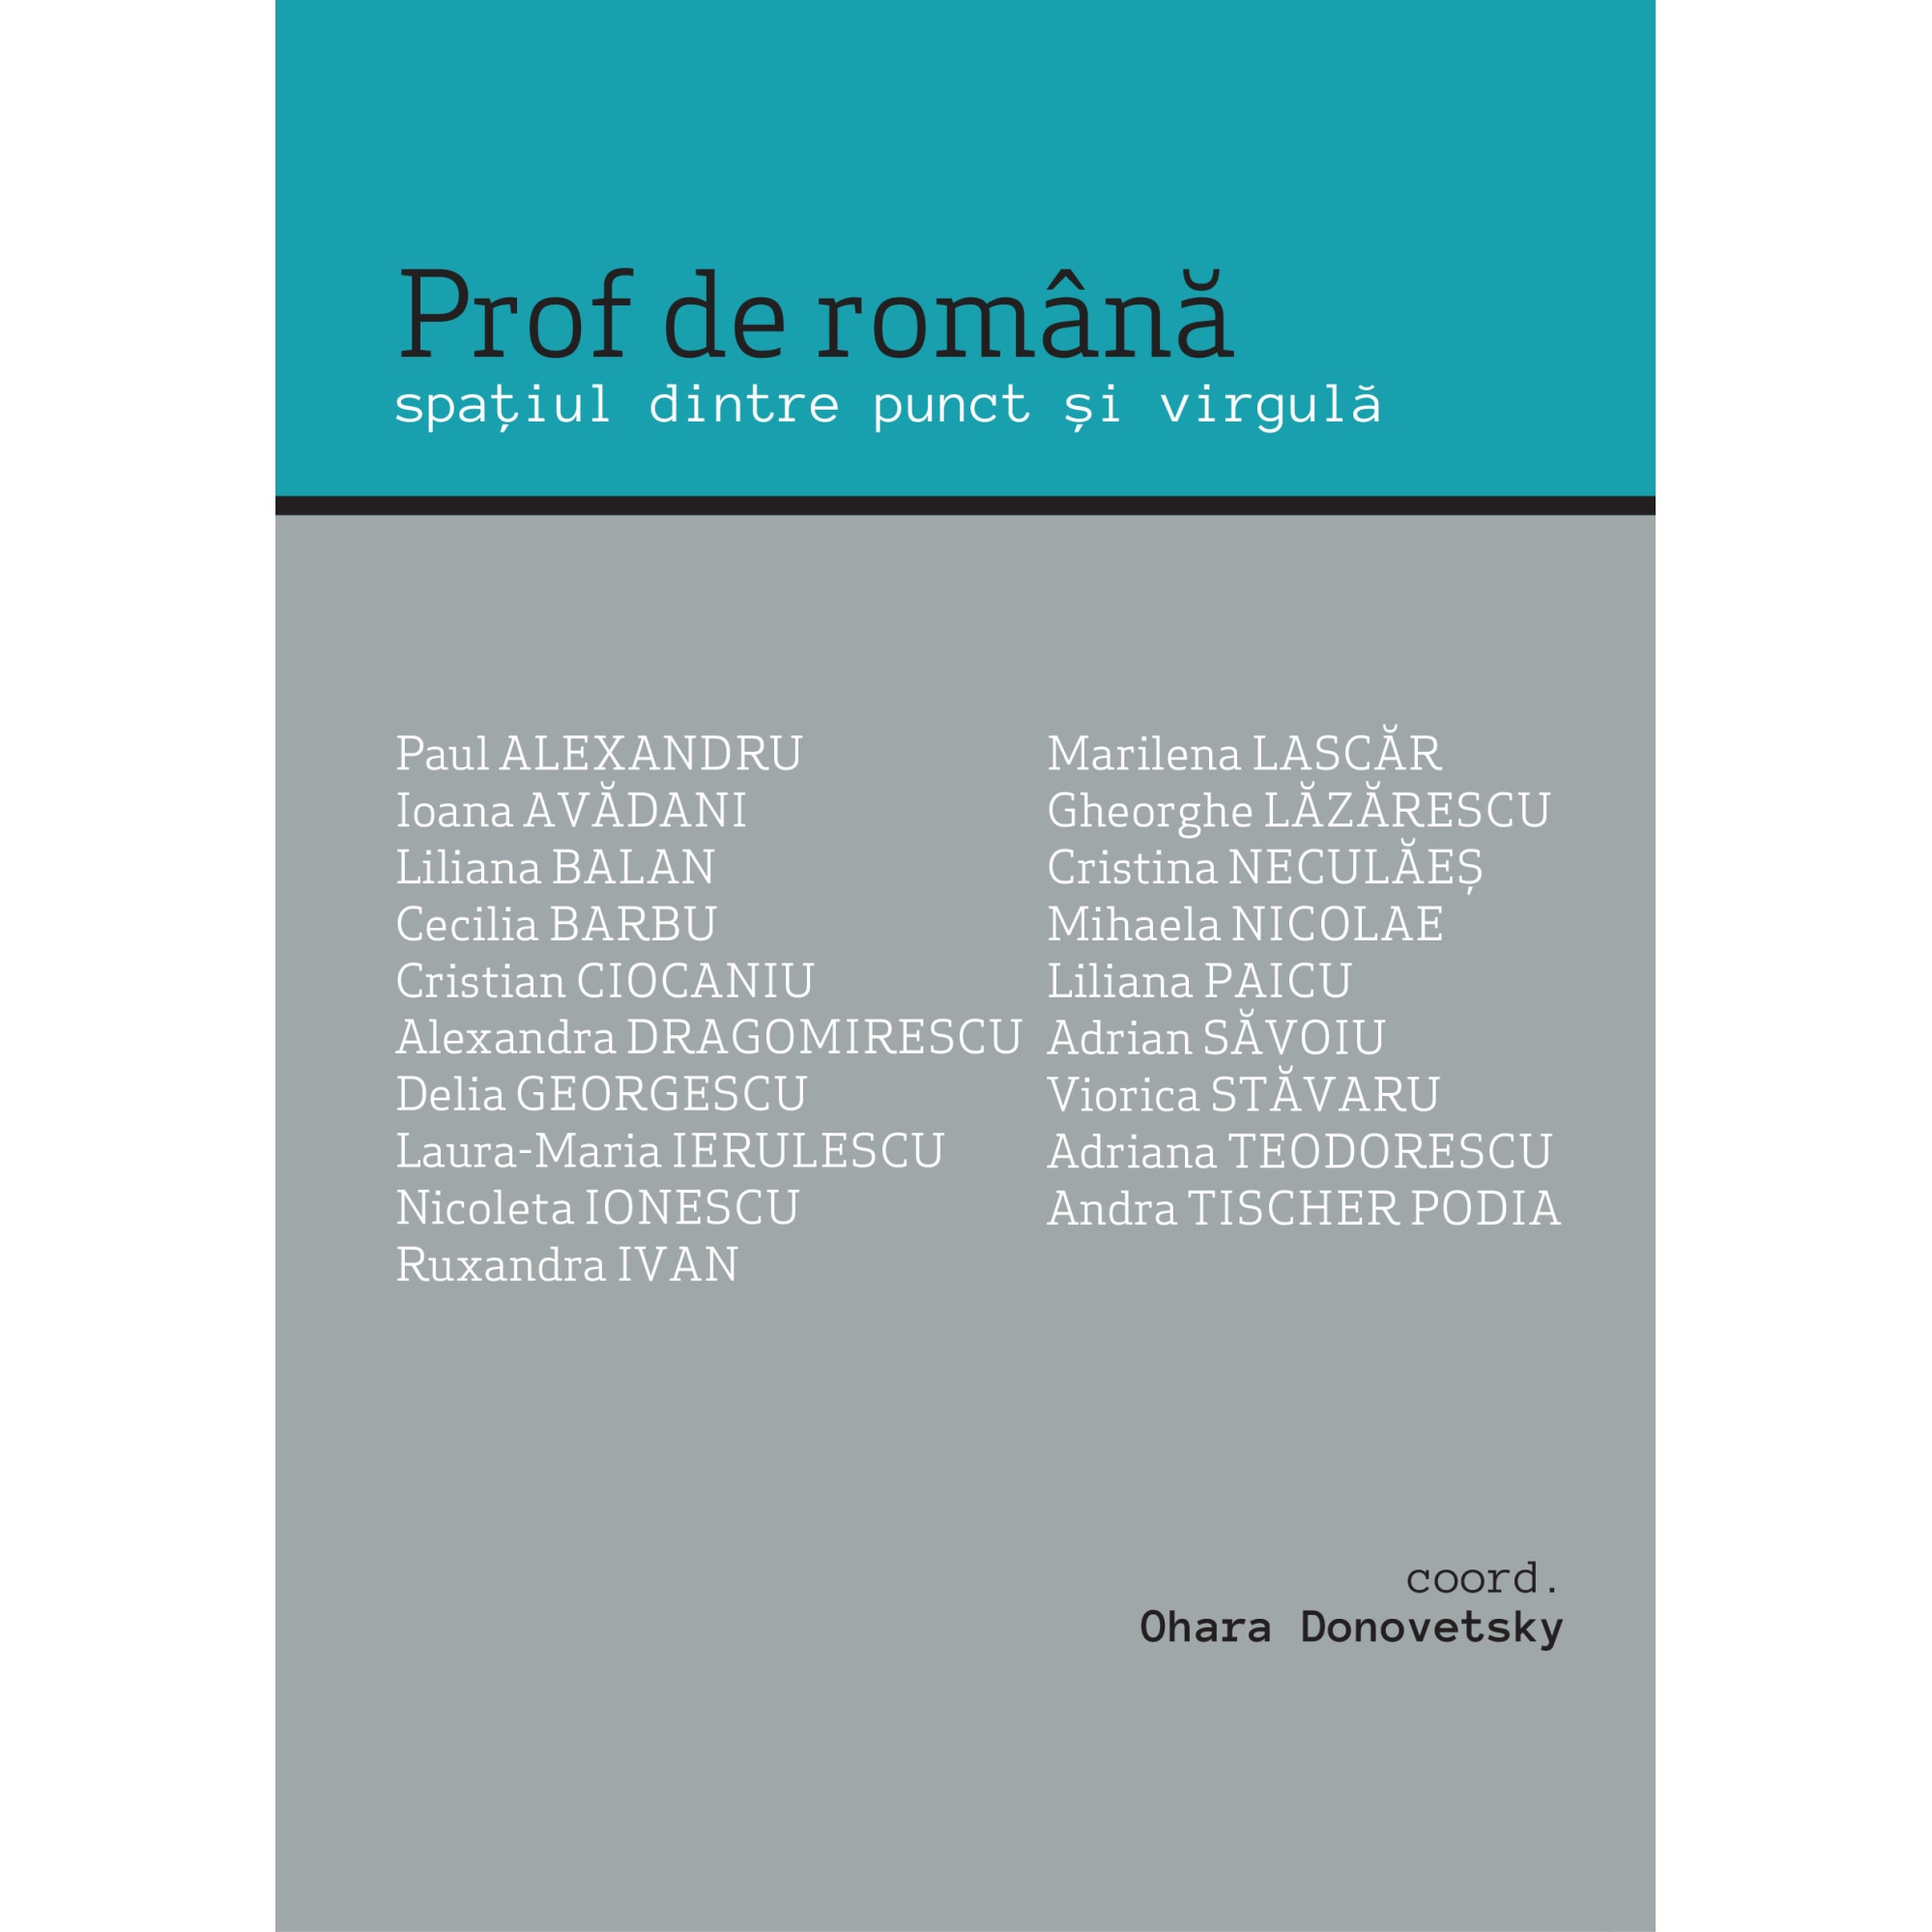 Prof de romana | Ohara Donovetsky Casa de Pariuri Literare imagine 2021